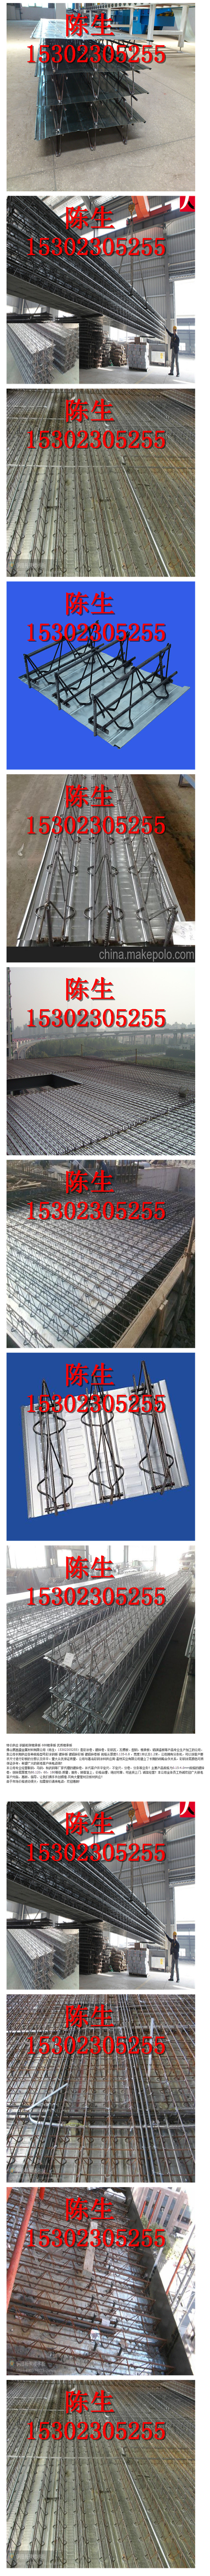 特价供应 钢筋桁架楼承板 688楼承板 优质楼承板-阿里巴巴.png